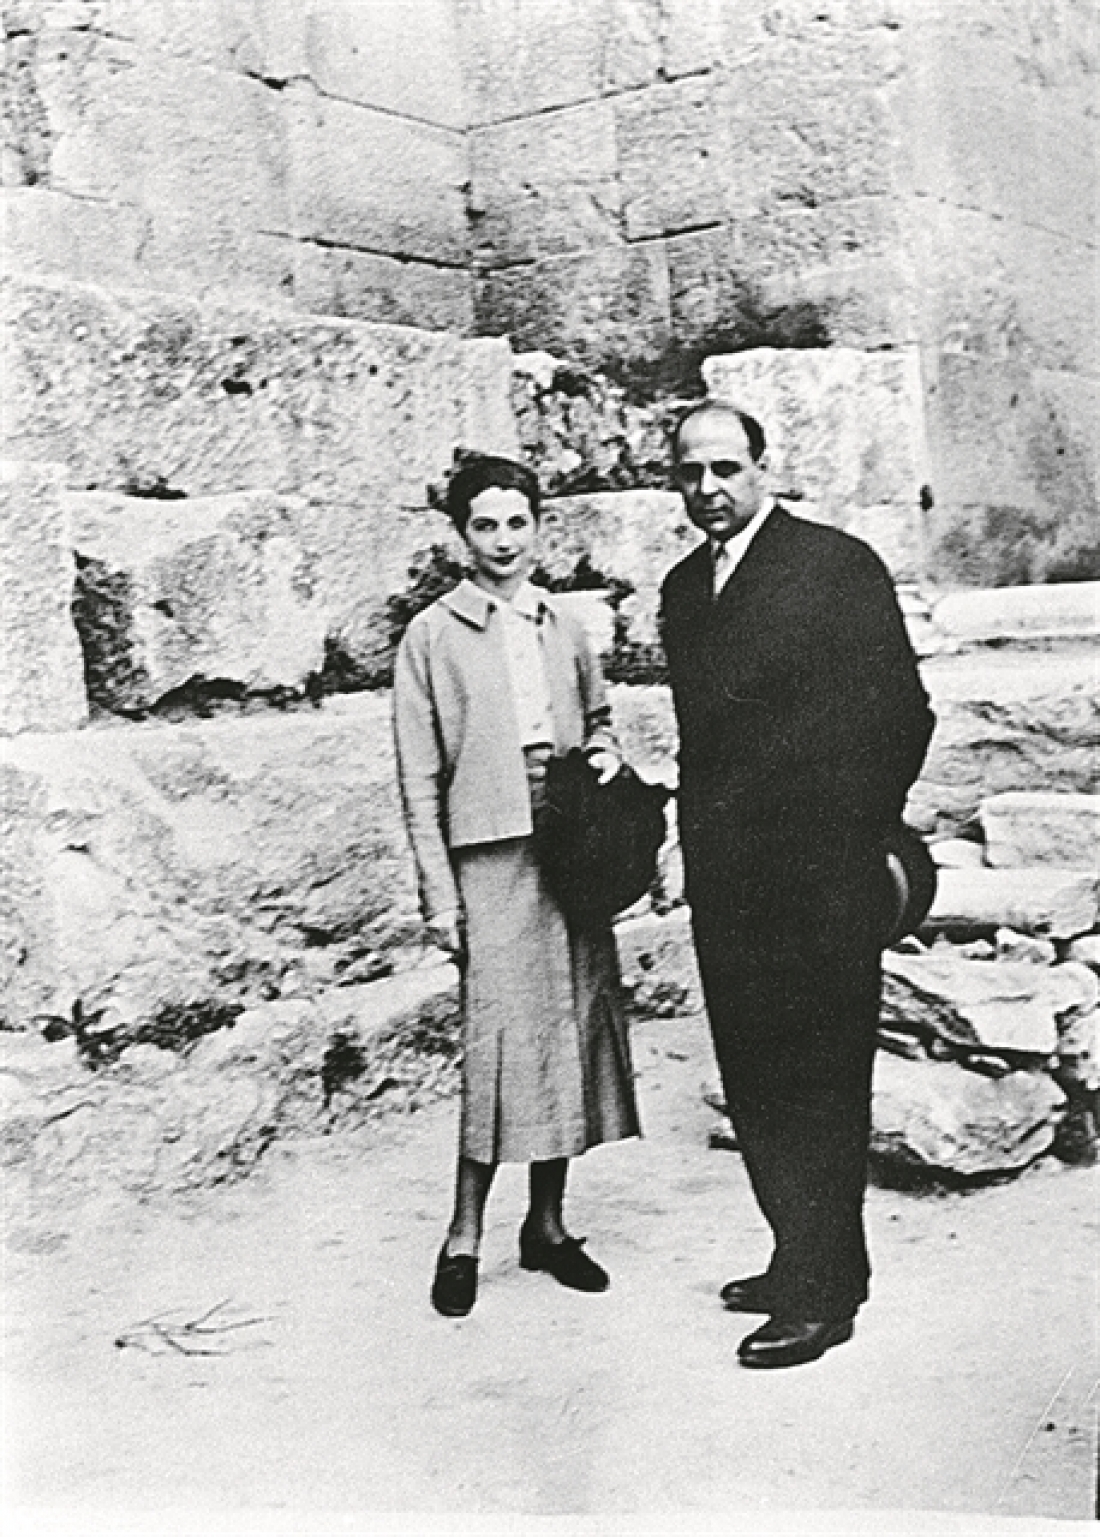 Ο Γιώργος Σεφέρης και η γυναίκα του Μαρώ, στην Αθήνα, έξω από το Ηρώδειο, το 1937. Φωτογραφία από το βιβλίο Γιώργος Σεφέρης, Επιστολές στην αδελφή του Ιωάννα (1934-1939), Μελάνι, 2019.